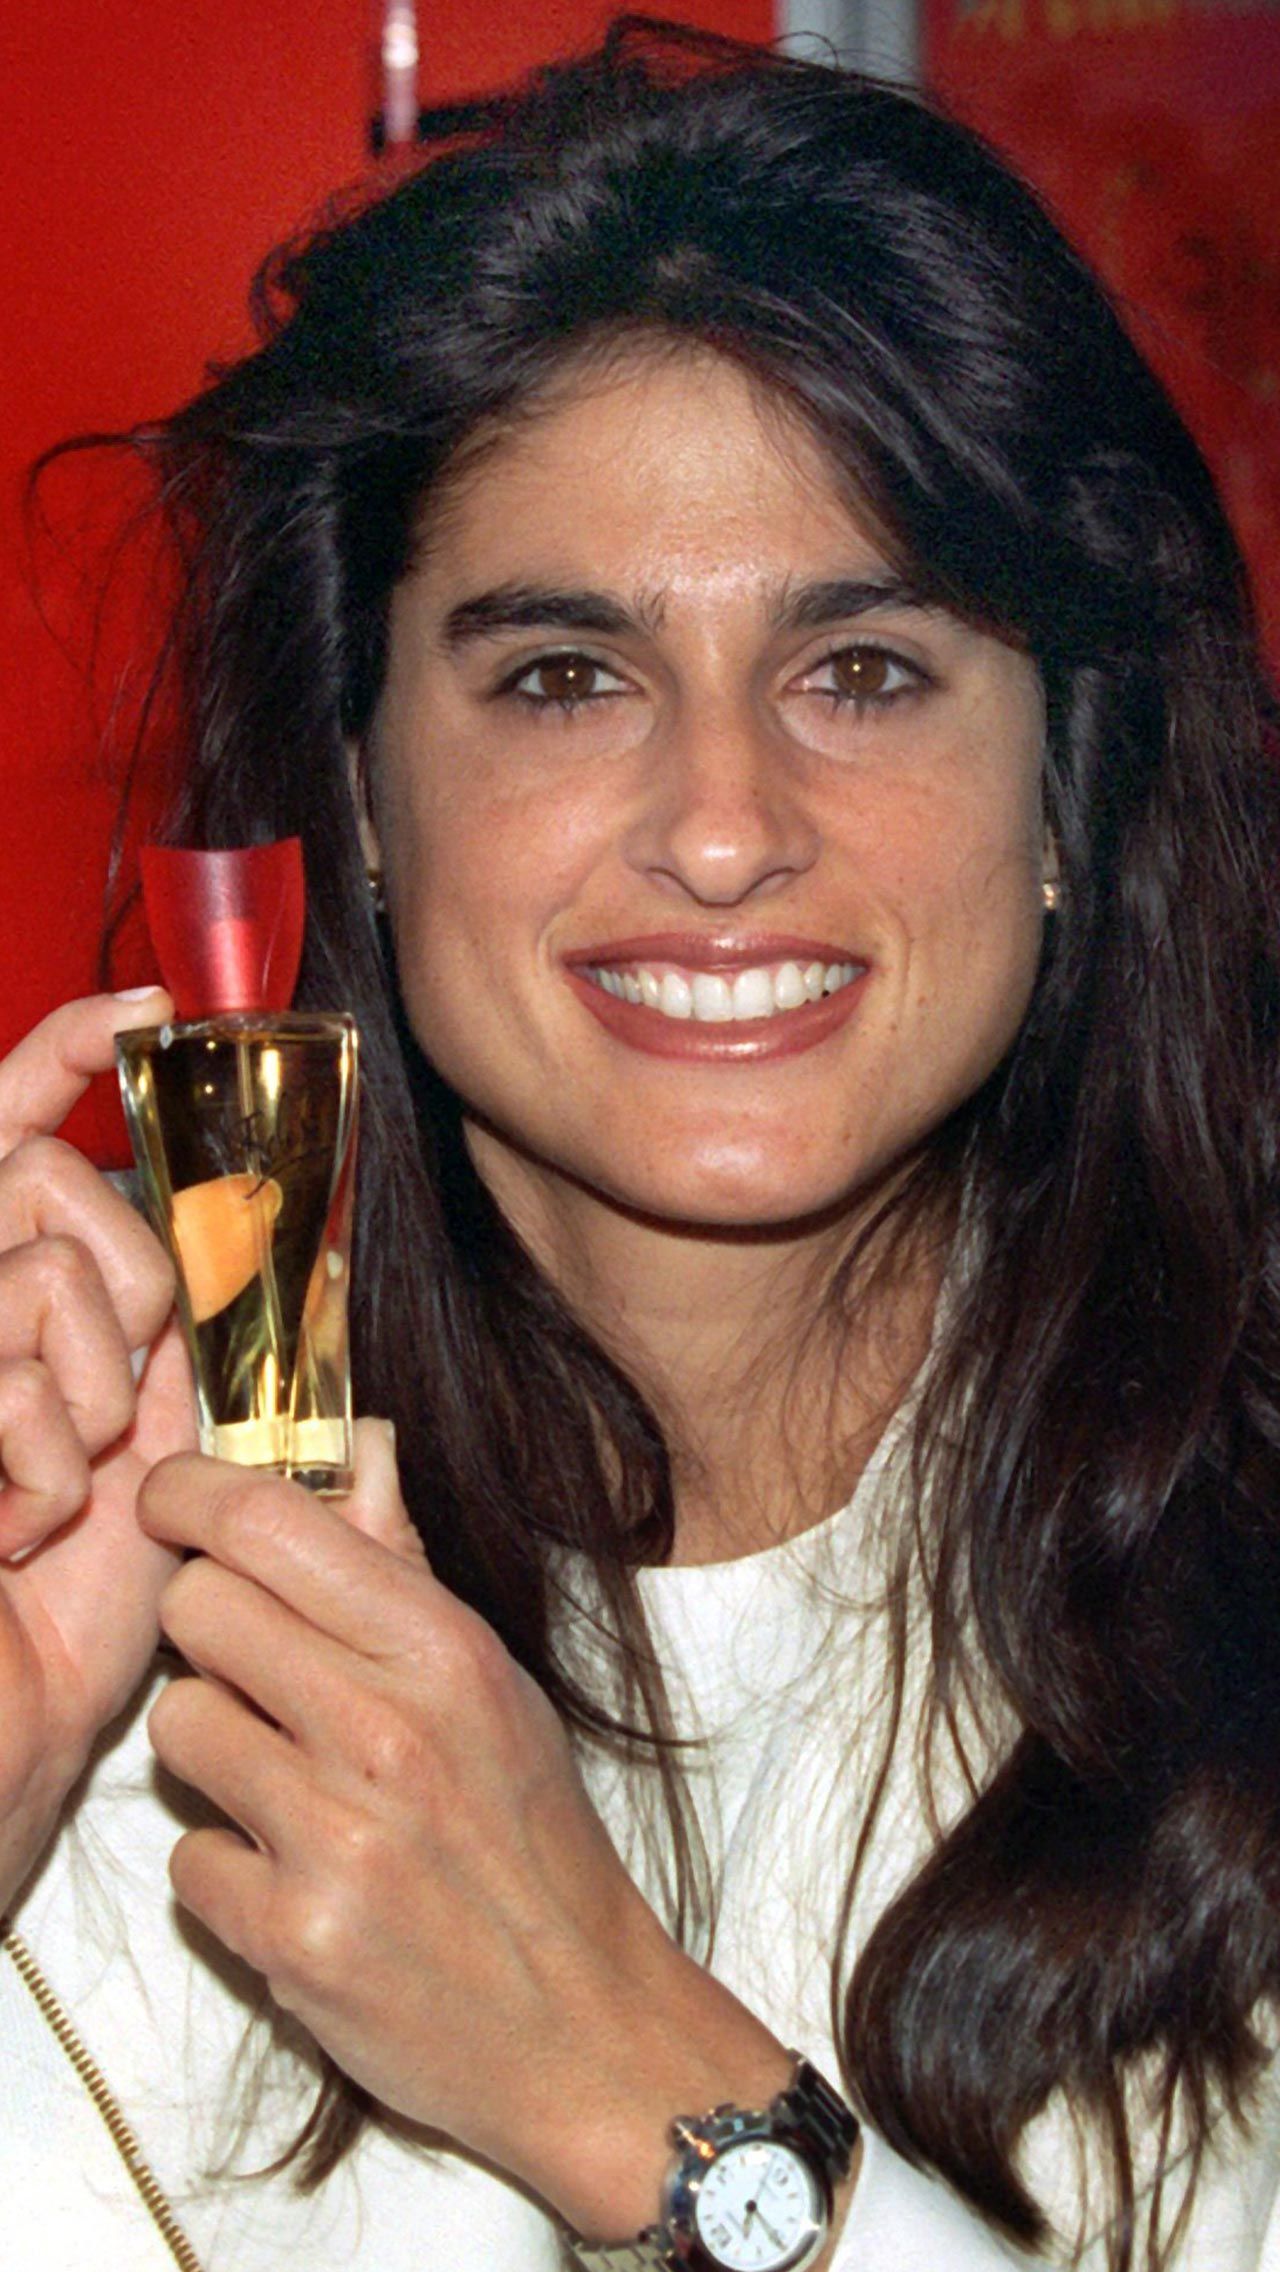 После спортивной карьеры Сабатини преуспела в бизнесе: ещё будучи в спорте, она подписала контракт с парфюмерной компанией и стала выпускать именные духи. Парфюм Gabriela Sabatini выпускается до сих пор.